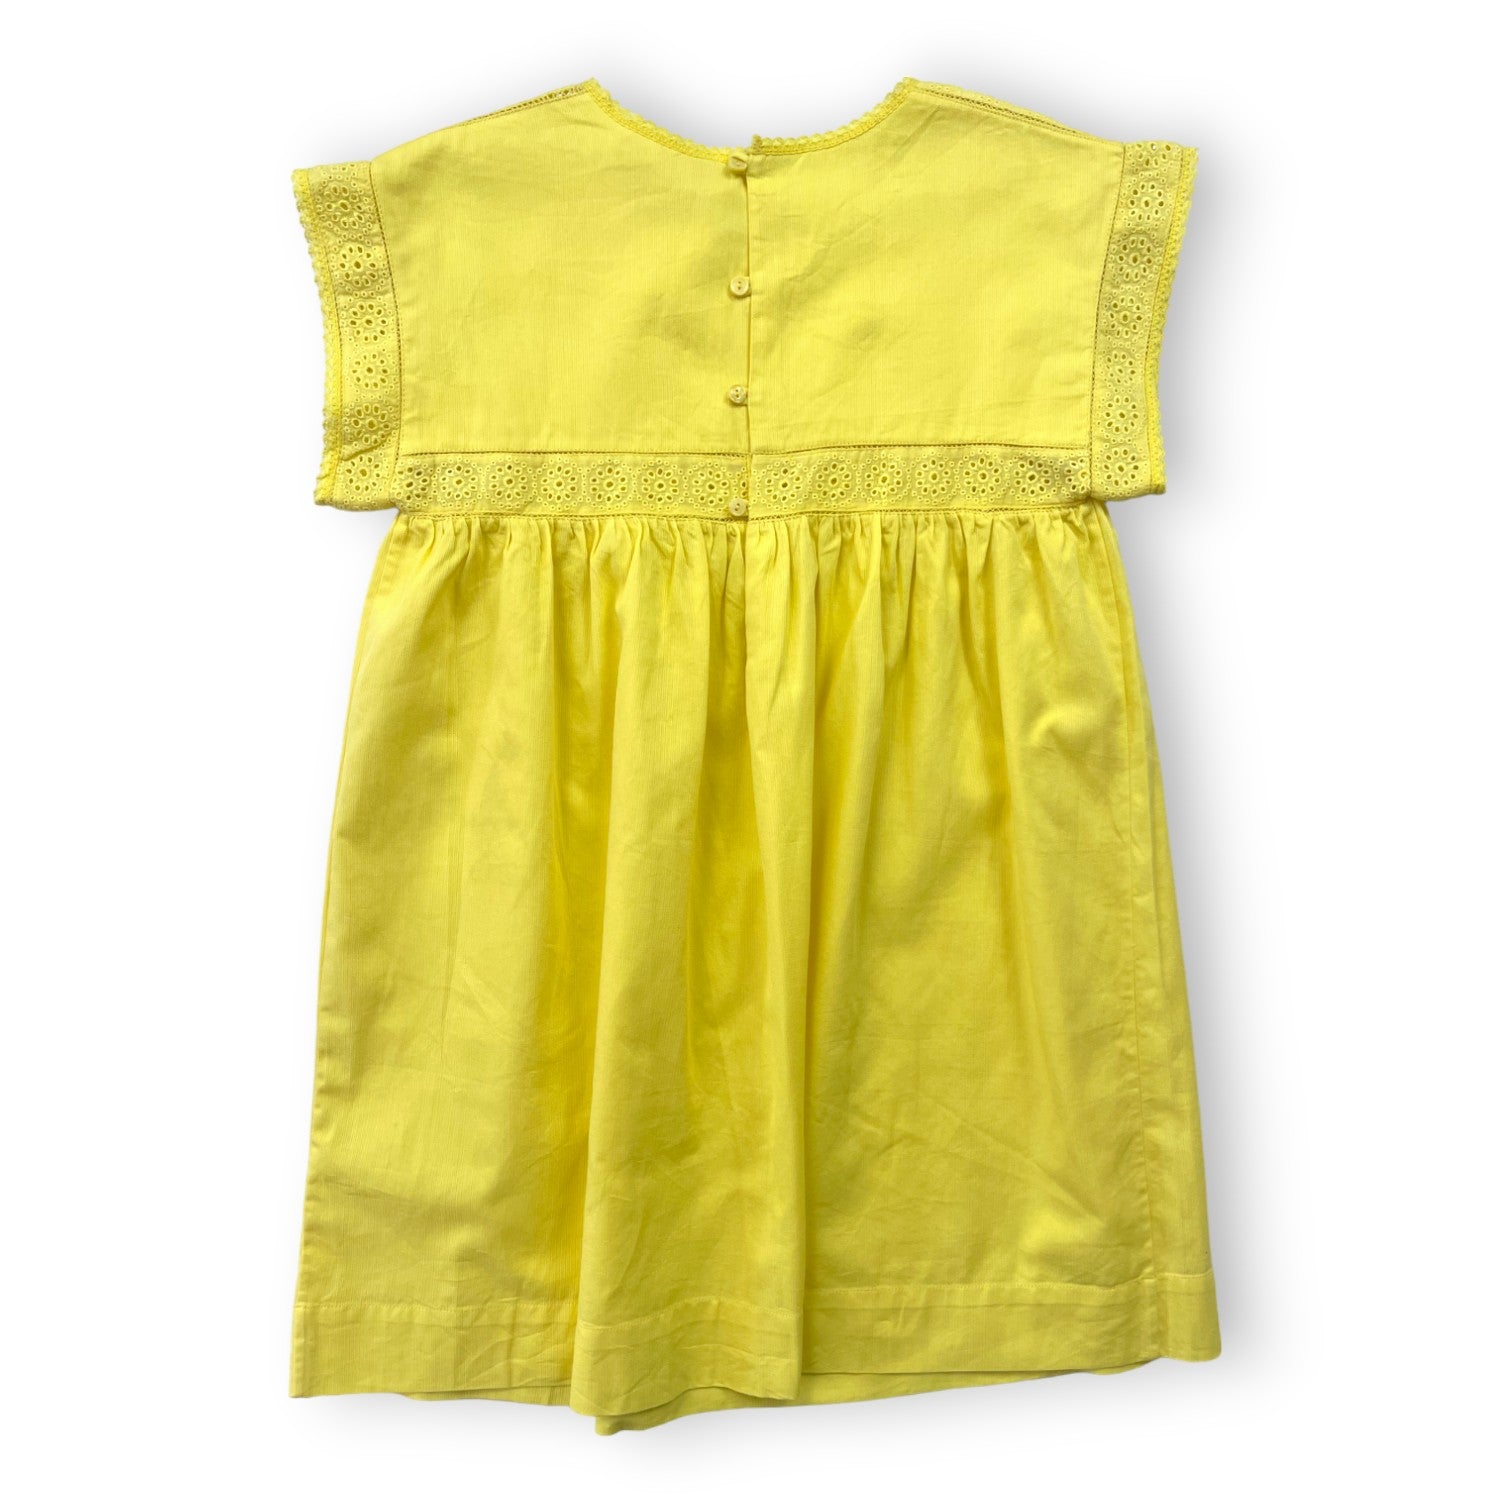 BONPOINT - Robe jaune citron détails dentelle (neuve) - 6 ans